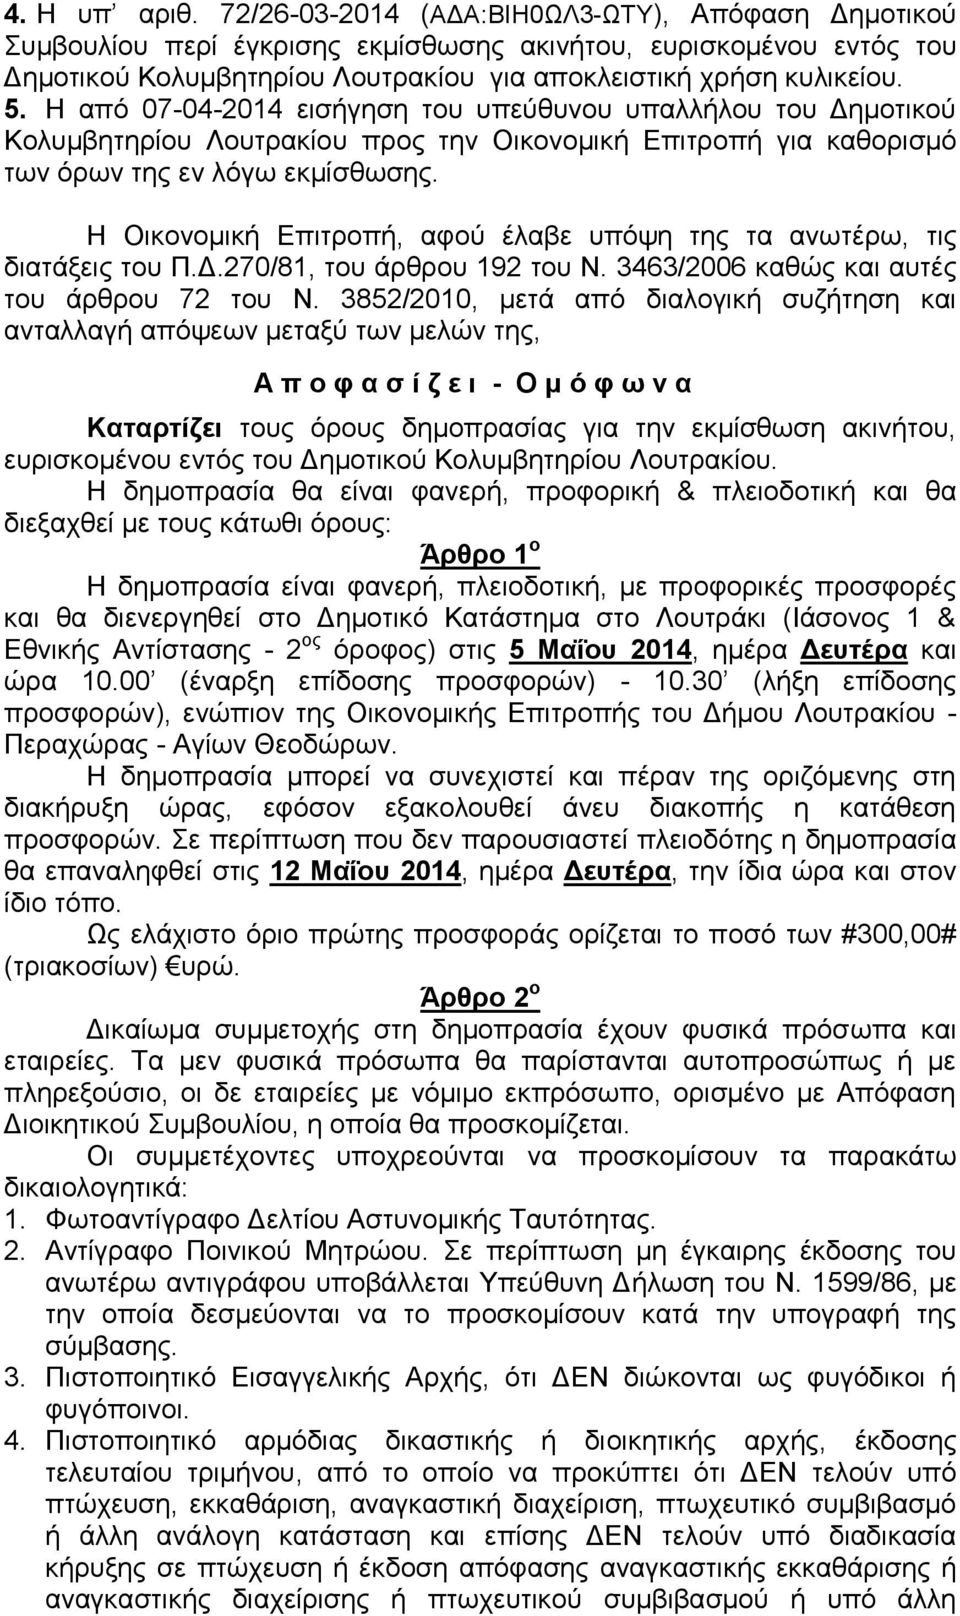 Η από 07-04-2014 εισήγηση του υπεύθυνου υπαλλήλου του Δημοτικού Κολυμβητηρίου Λουτρακίου προς την Οικονομική Επιτροπή για καθορισμό των όρων της εν λόγω εκμίσθωσης.